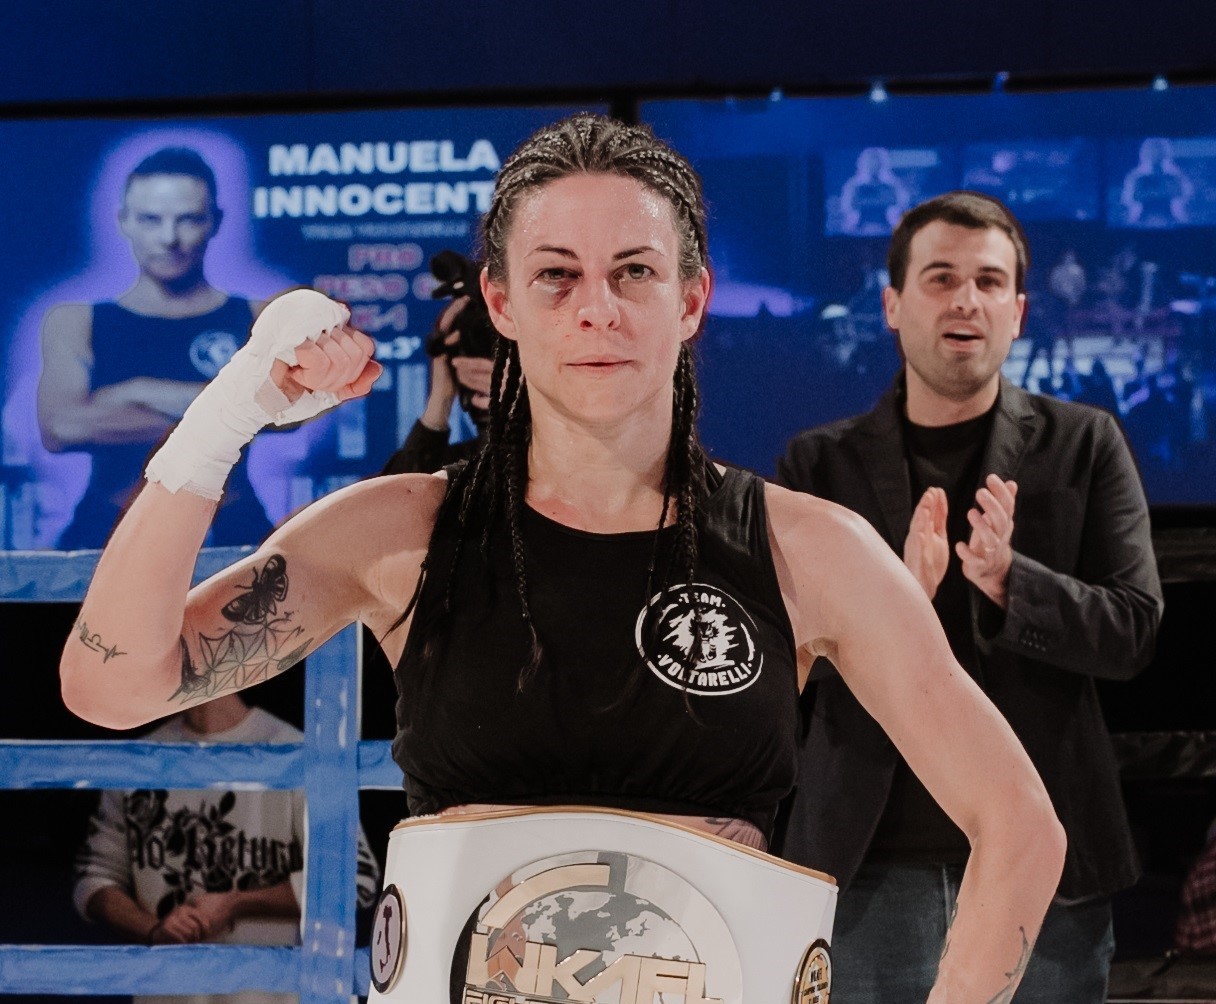 Manuela Innocenti è la nuova campionessa italiana di Kick Boxing K1